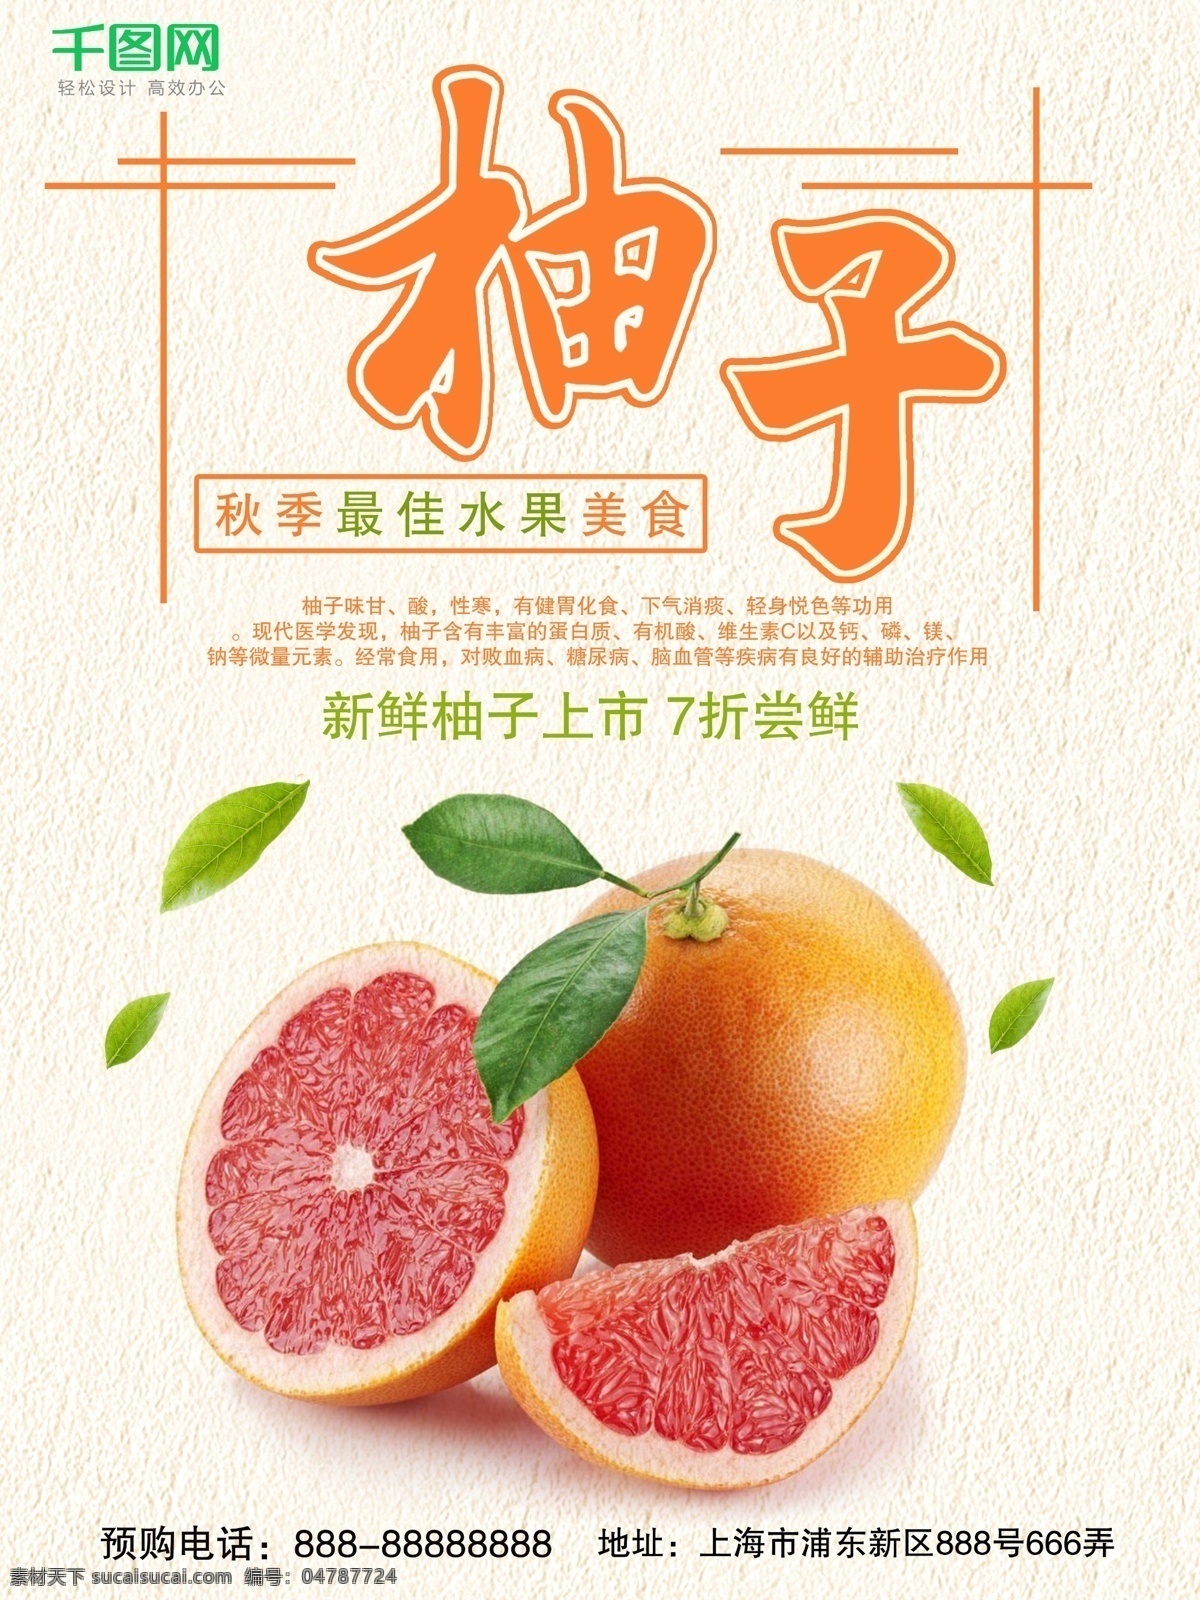 秋季 水果 柚子 美食 海报 促销 美味柚子 简约